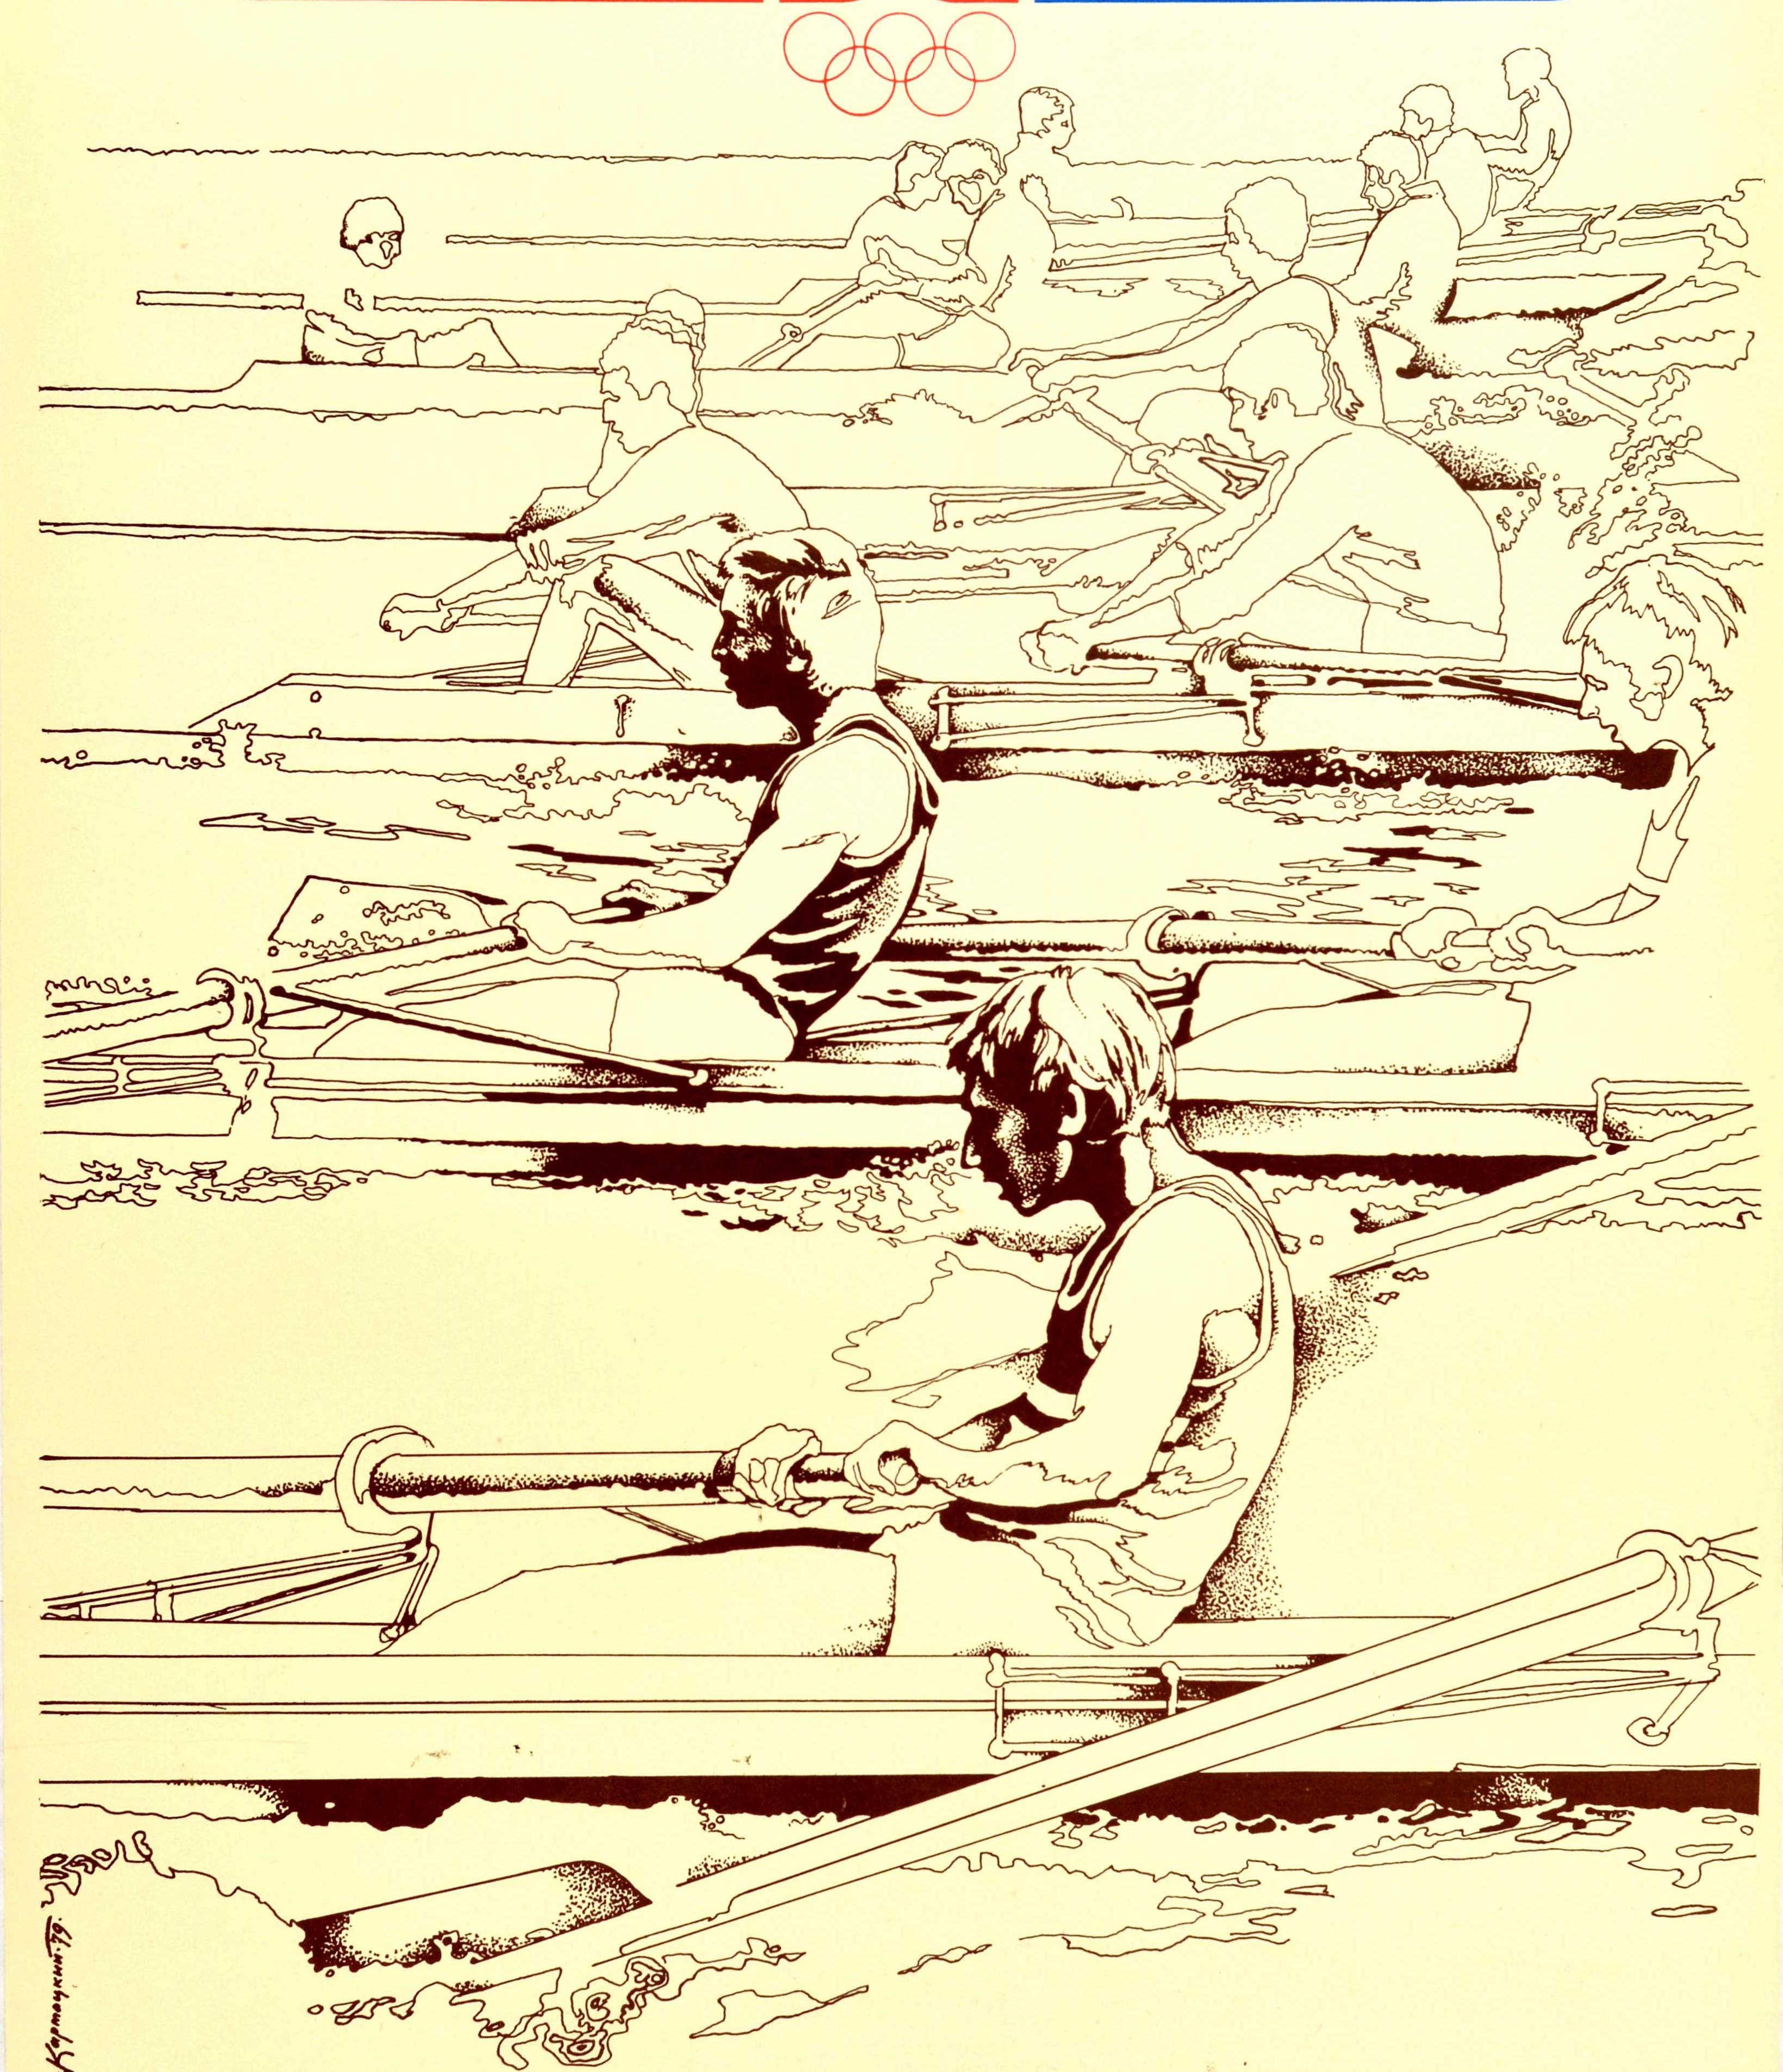 Original-Sportplakat für die Olympischen Spiele 1980 in Moskau Russland mit einem dynamischen Design von Ruderern in Bahnen, die in ihren Booten gegeneinander antreten, mit dem Symbol der Ruderveranstaltung und dem olympischen Logo und den Ringen